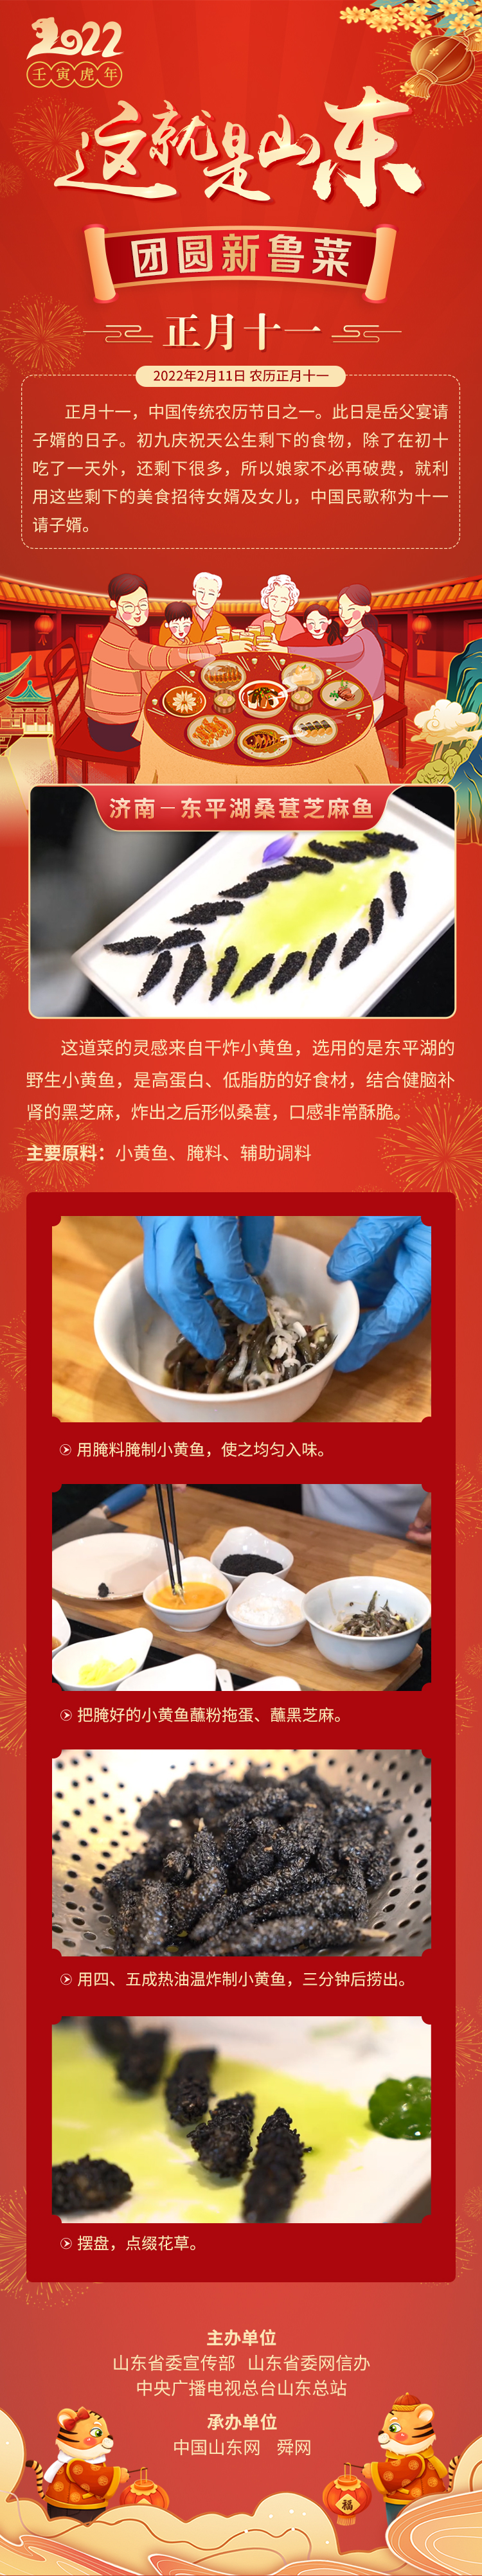 这就是山东·团圆新鲁菜——济南-东平湖桑葚芝麻鱼